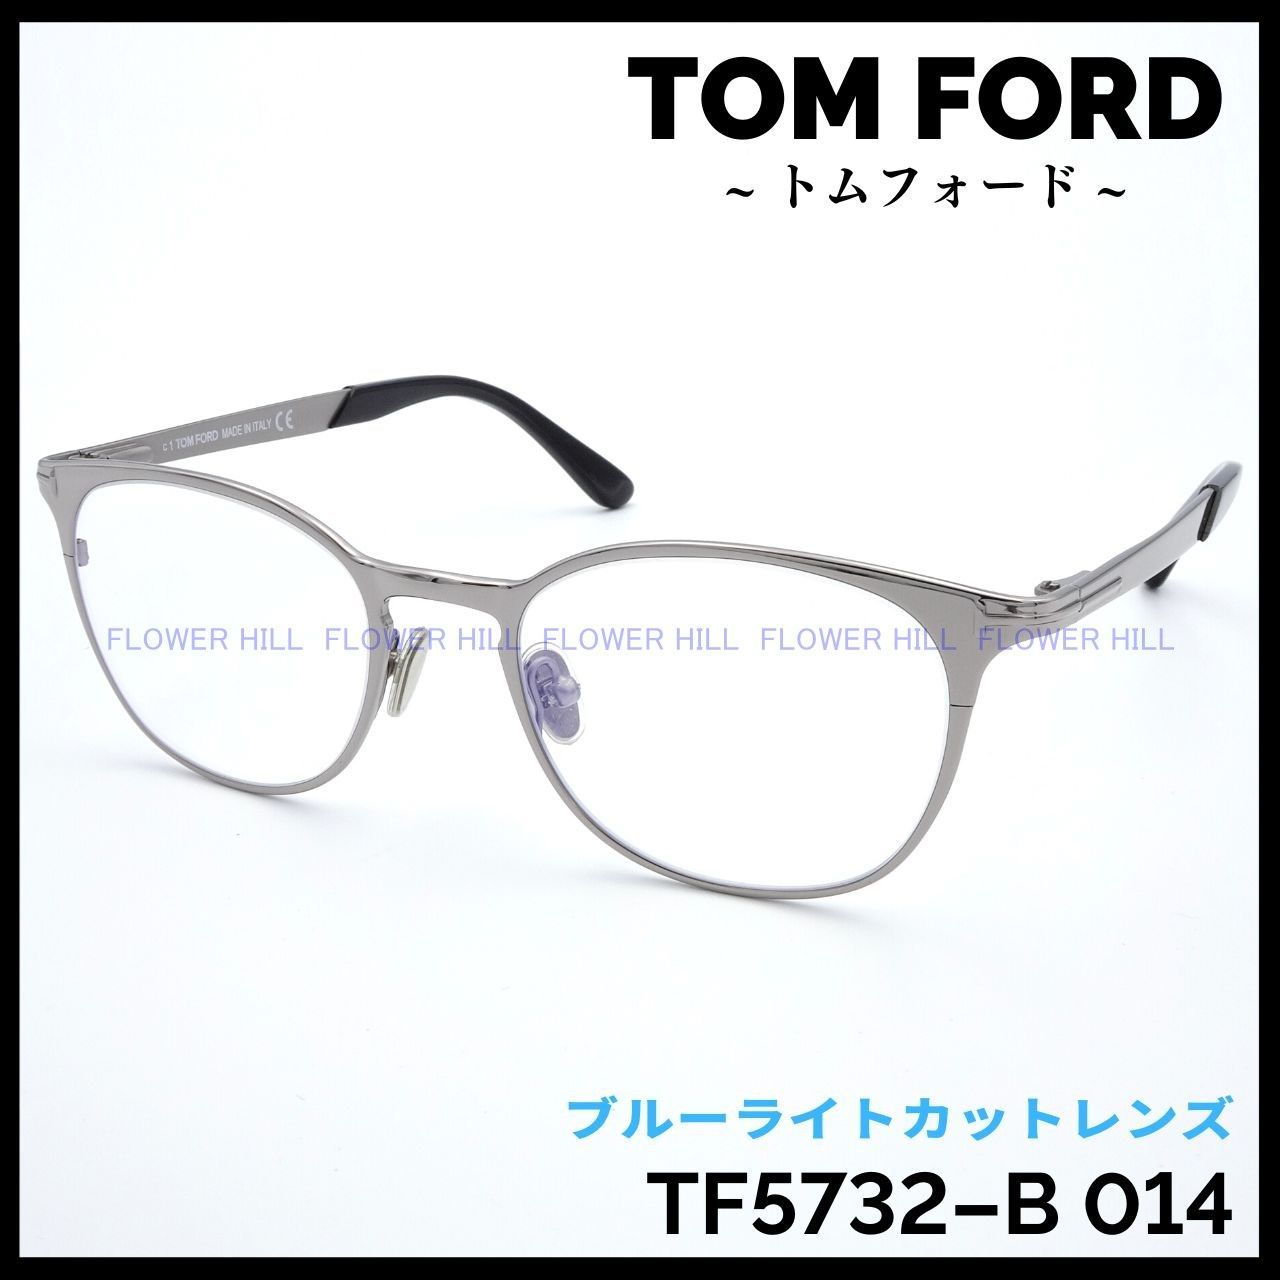 トムフォード TF5732-B 014 50サイズ メタルフレーム シルバー